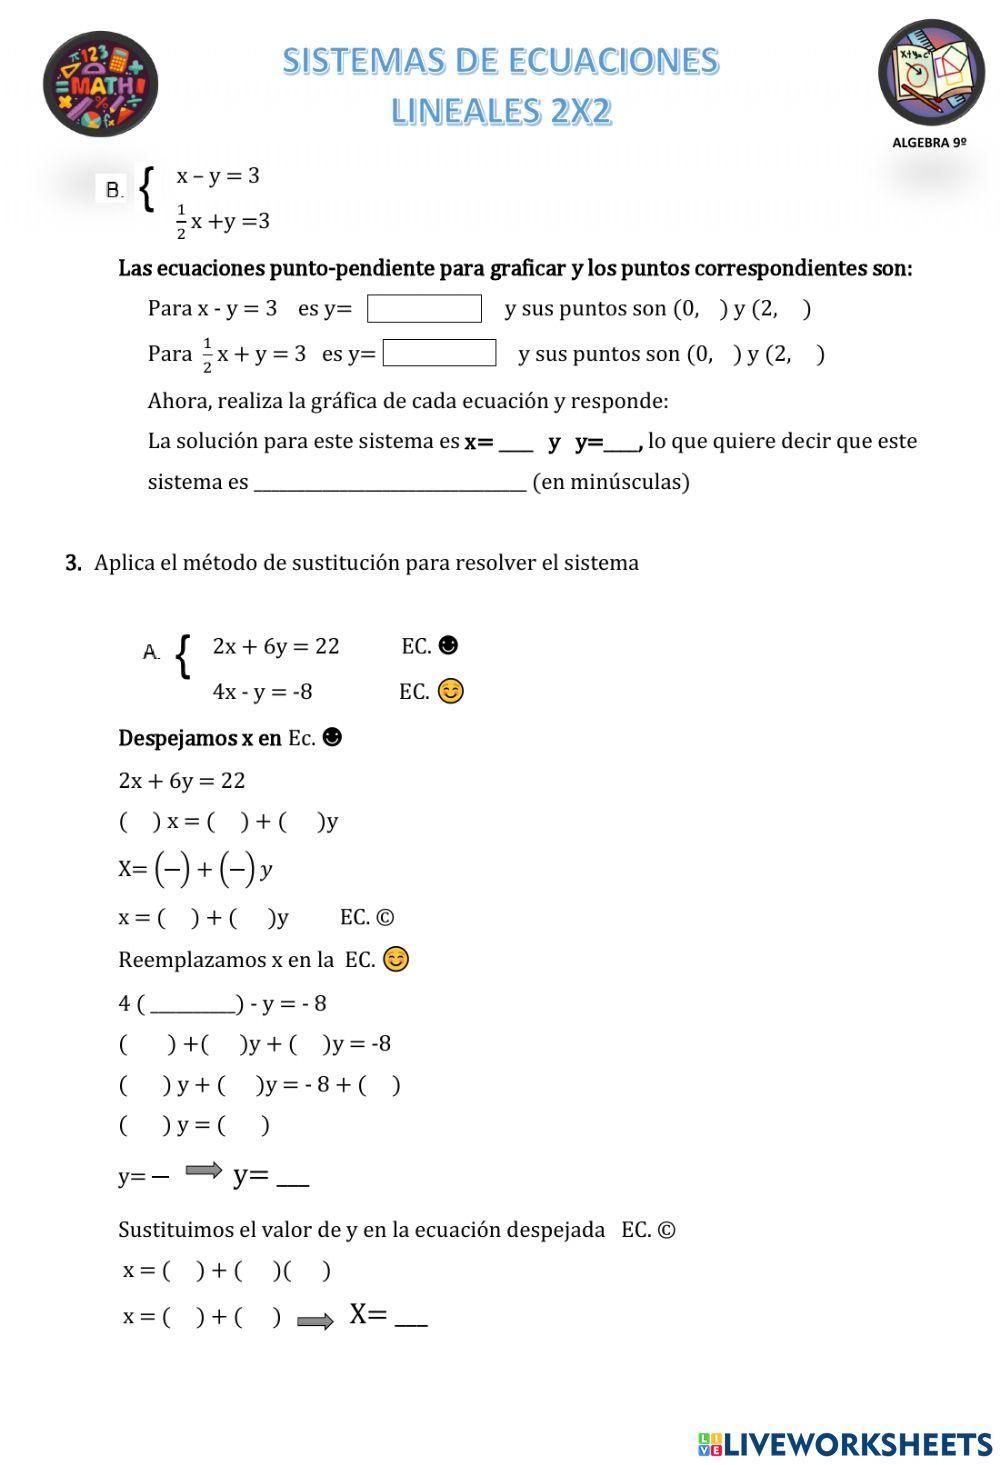 Sistemas de Ecuaciones 2x2. Método grafico, sustitución y reducción